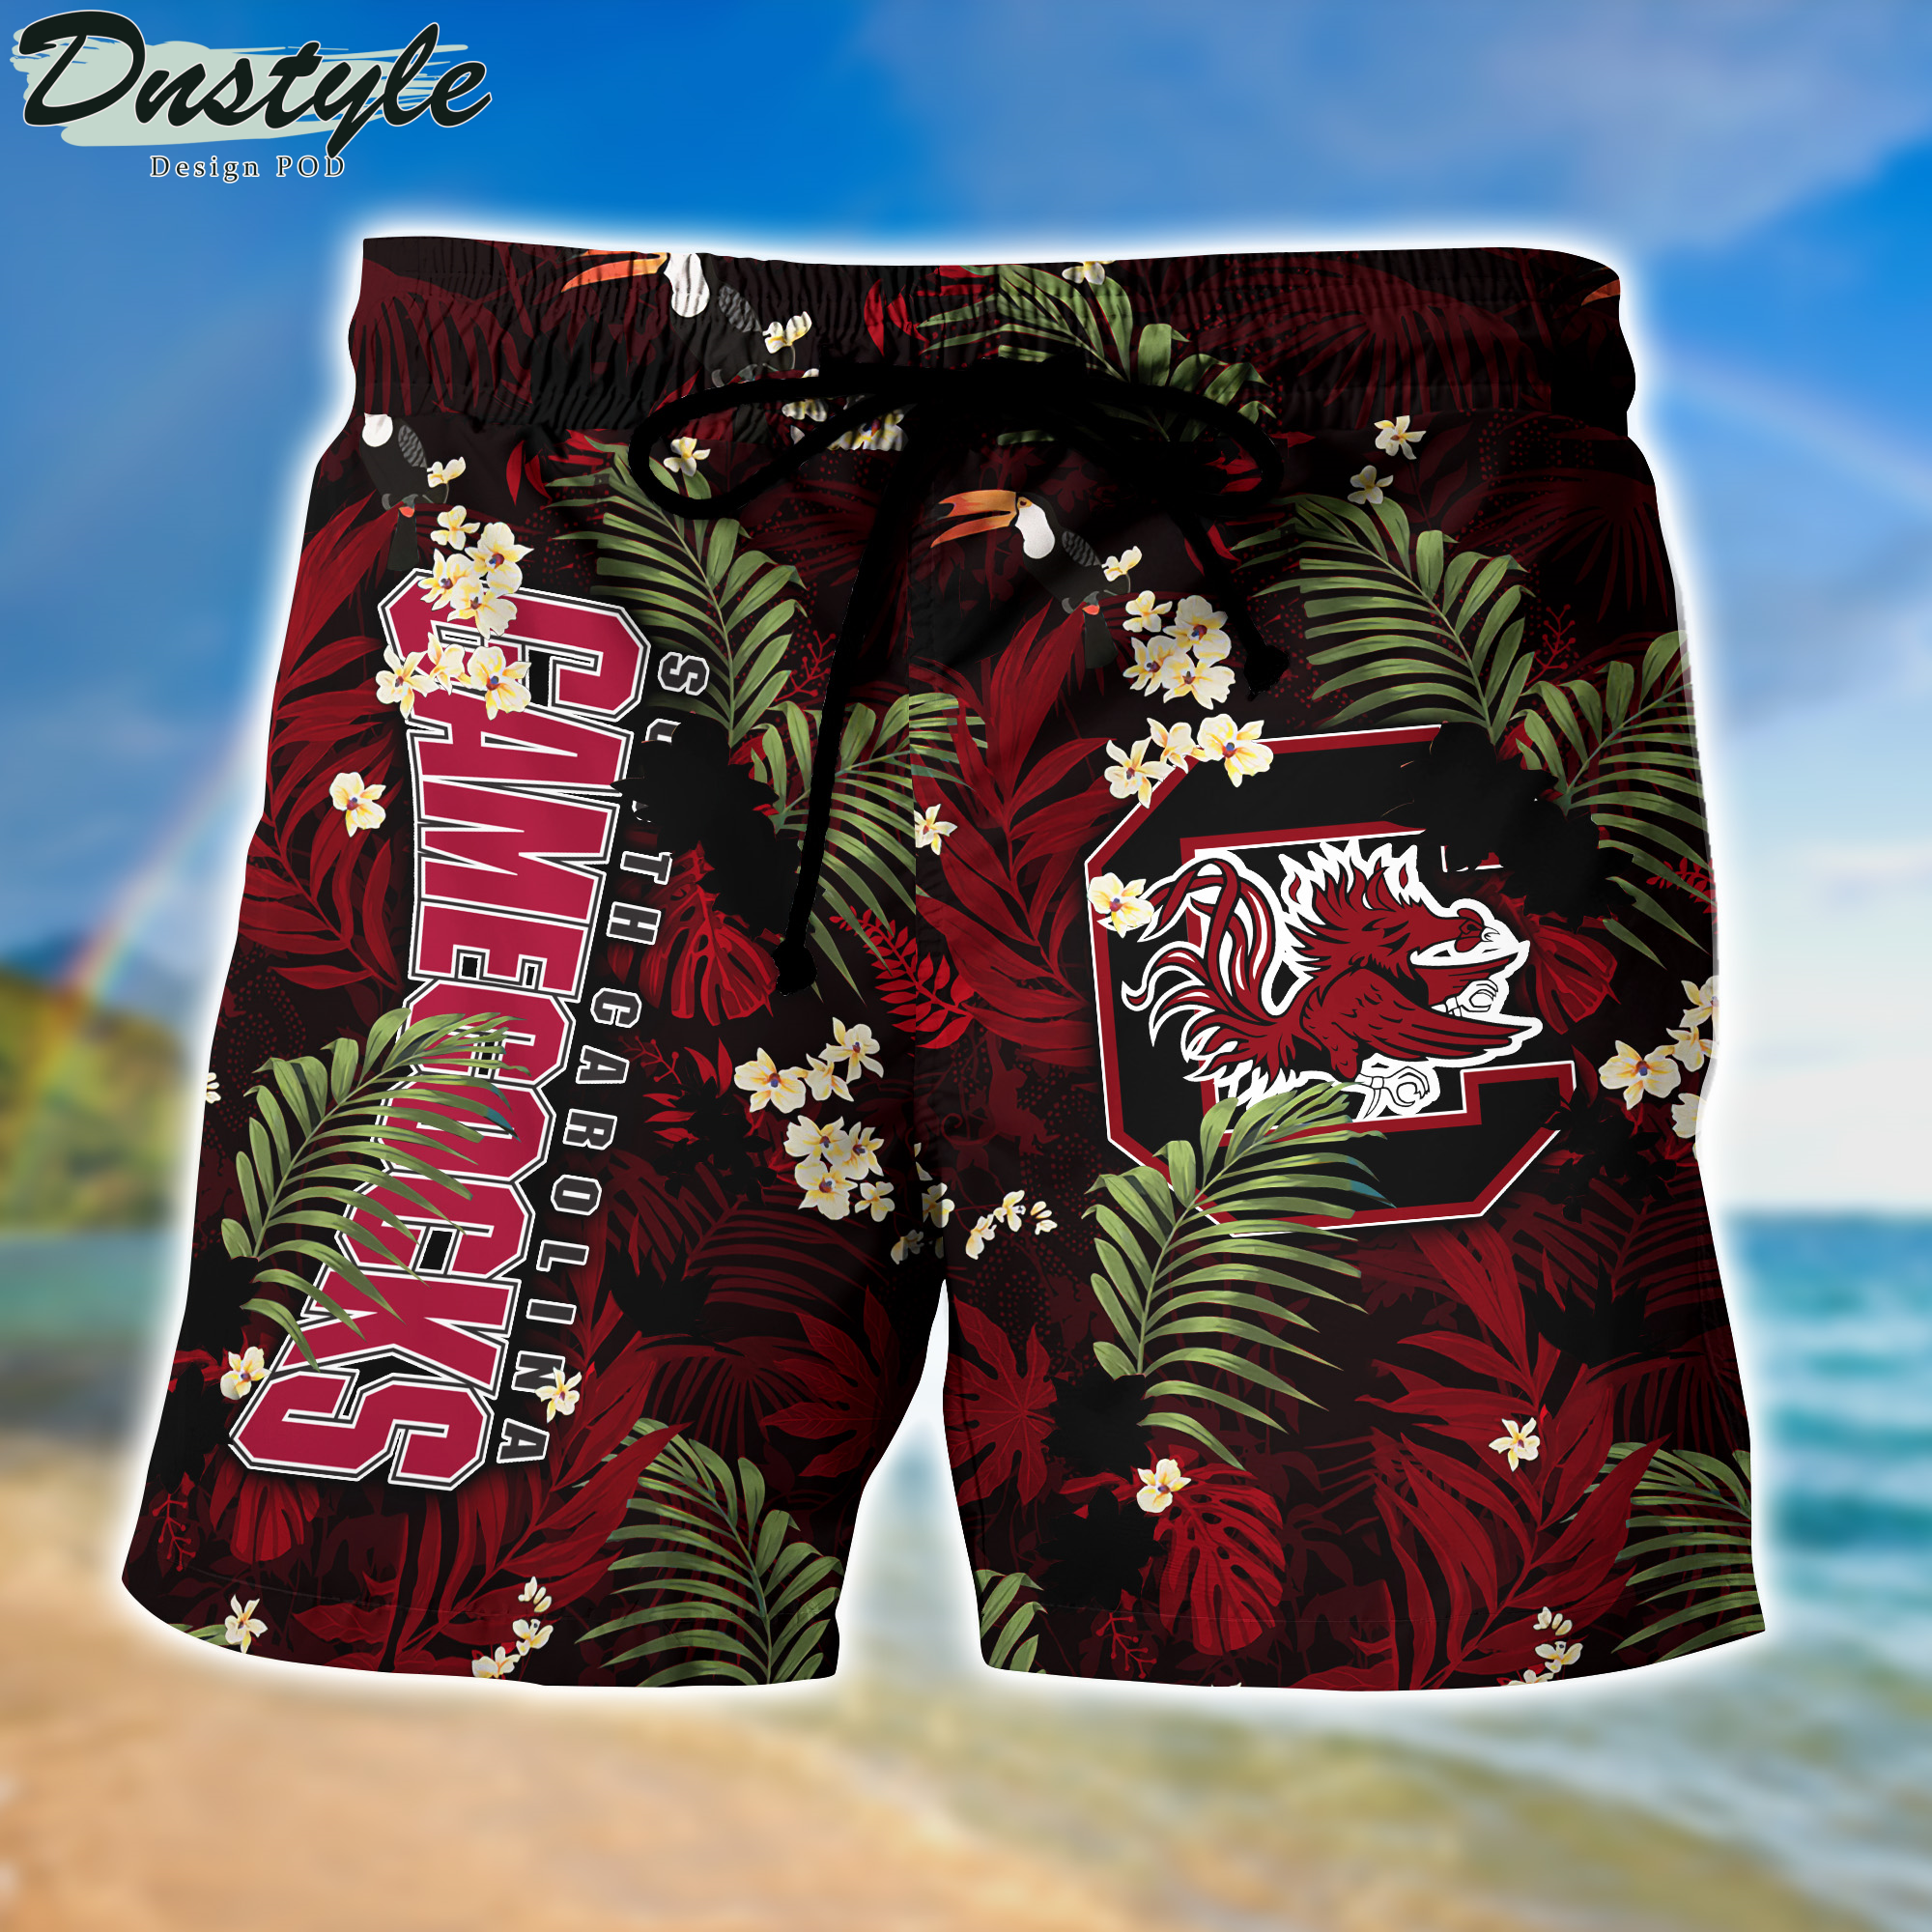 South Carolina Gamecocks Hawaii Shirt And Shorts New Collection